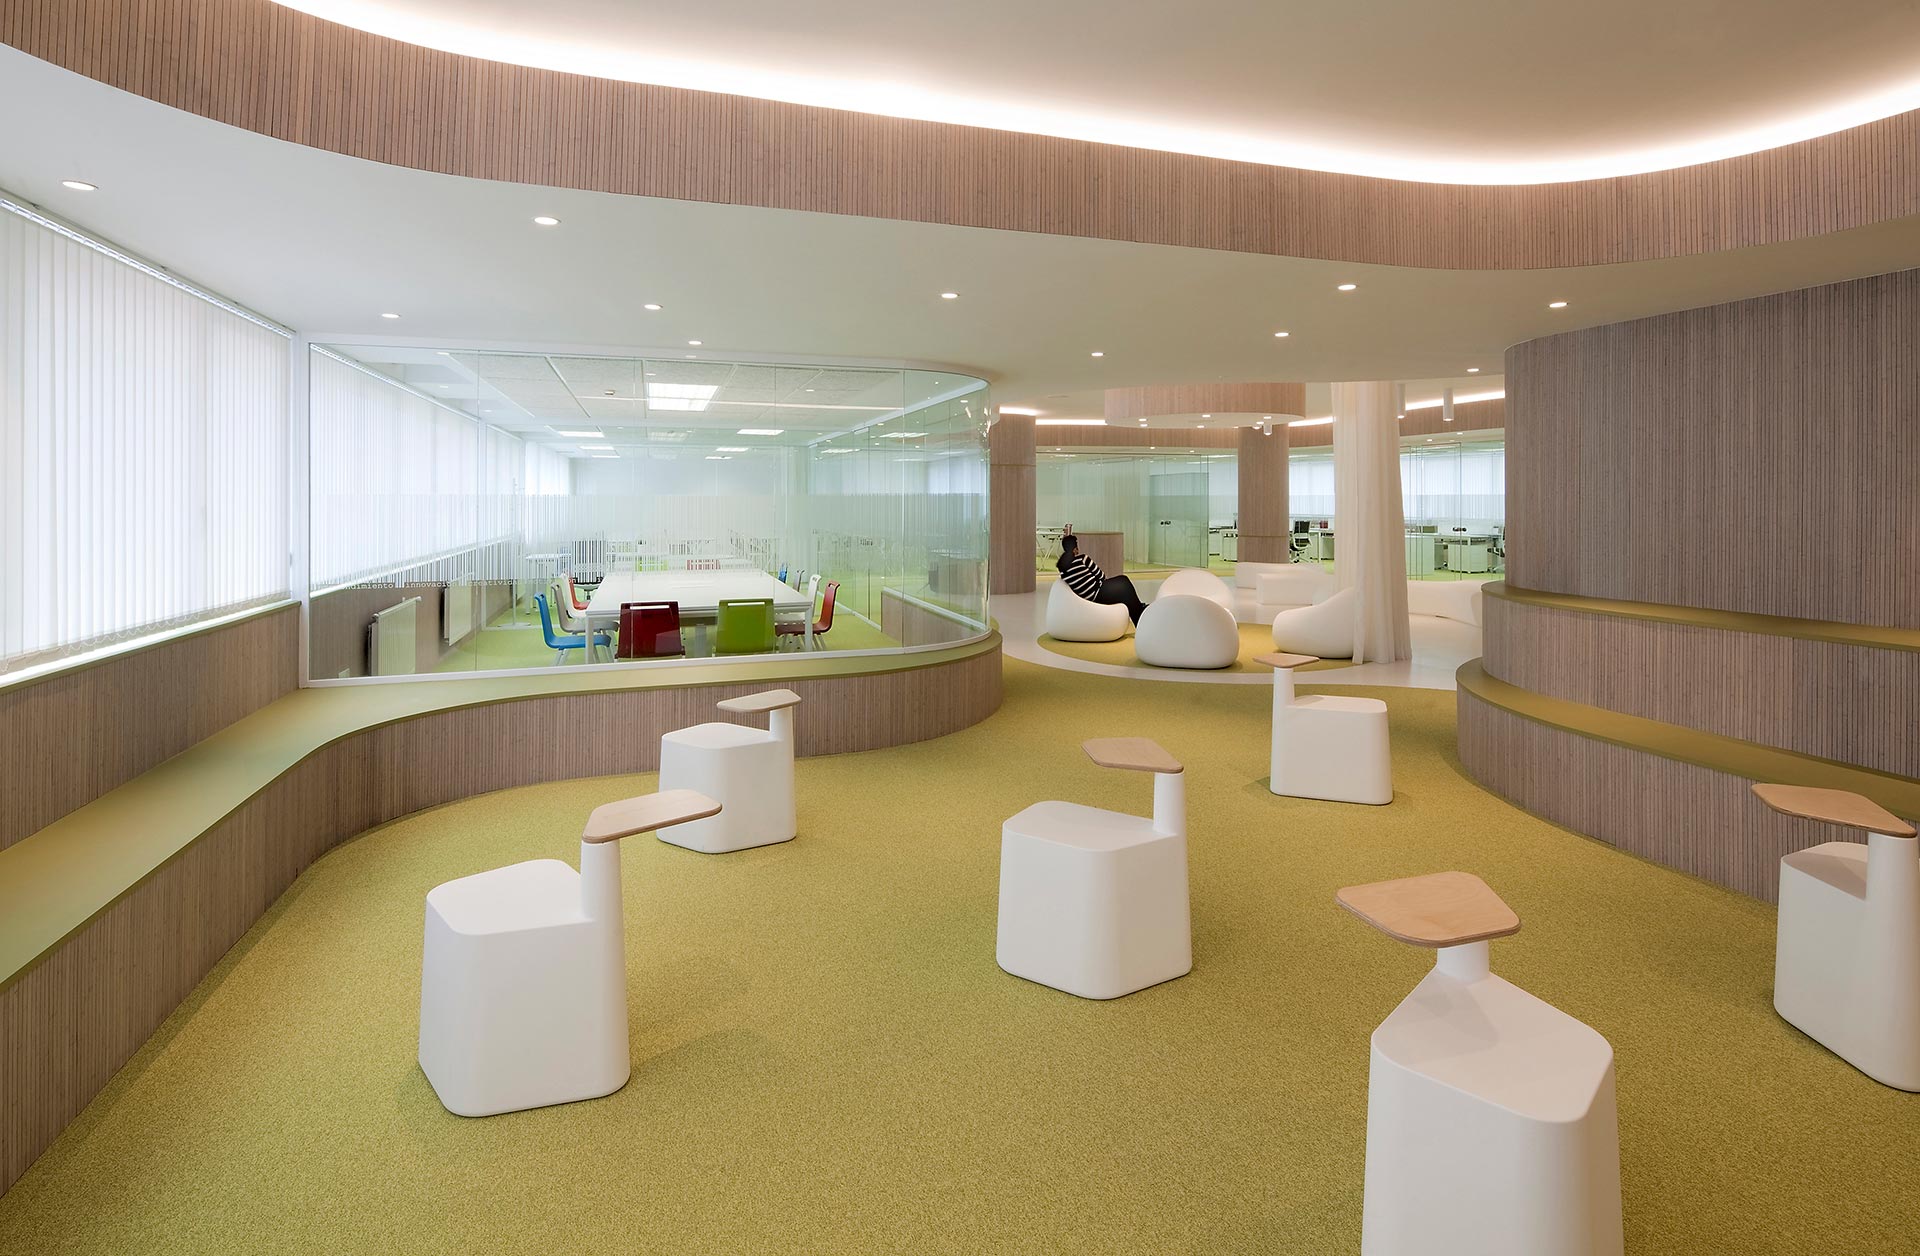 Espacio interior con gradas en reforma de oficinas del CISE diseñado por Moah Arquitectos en Santander